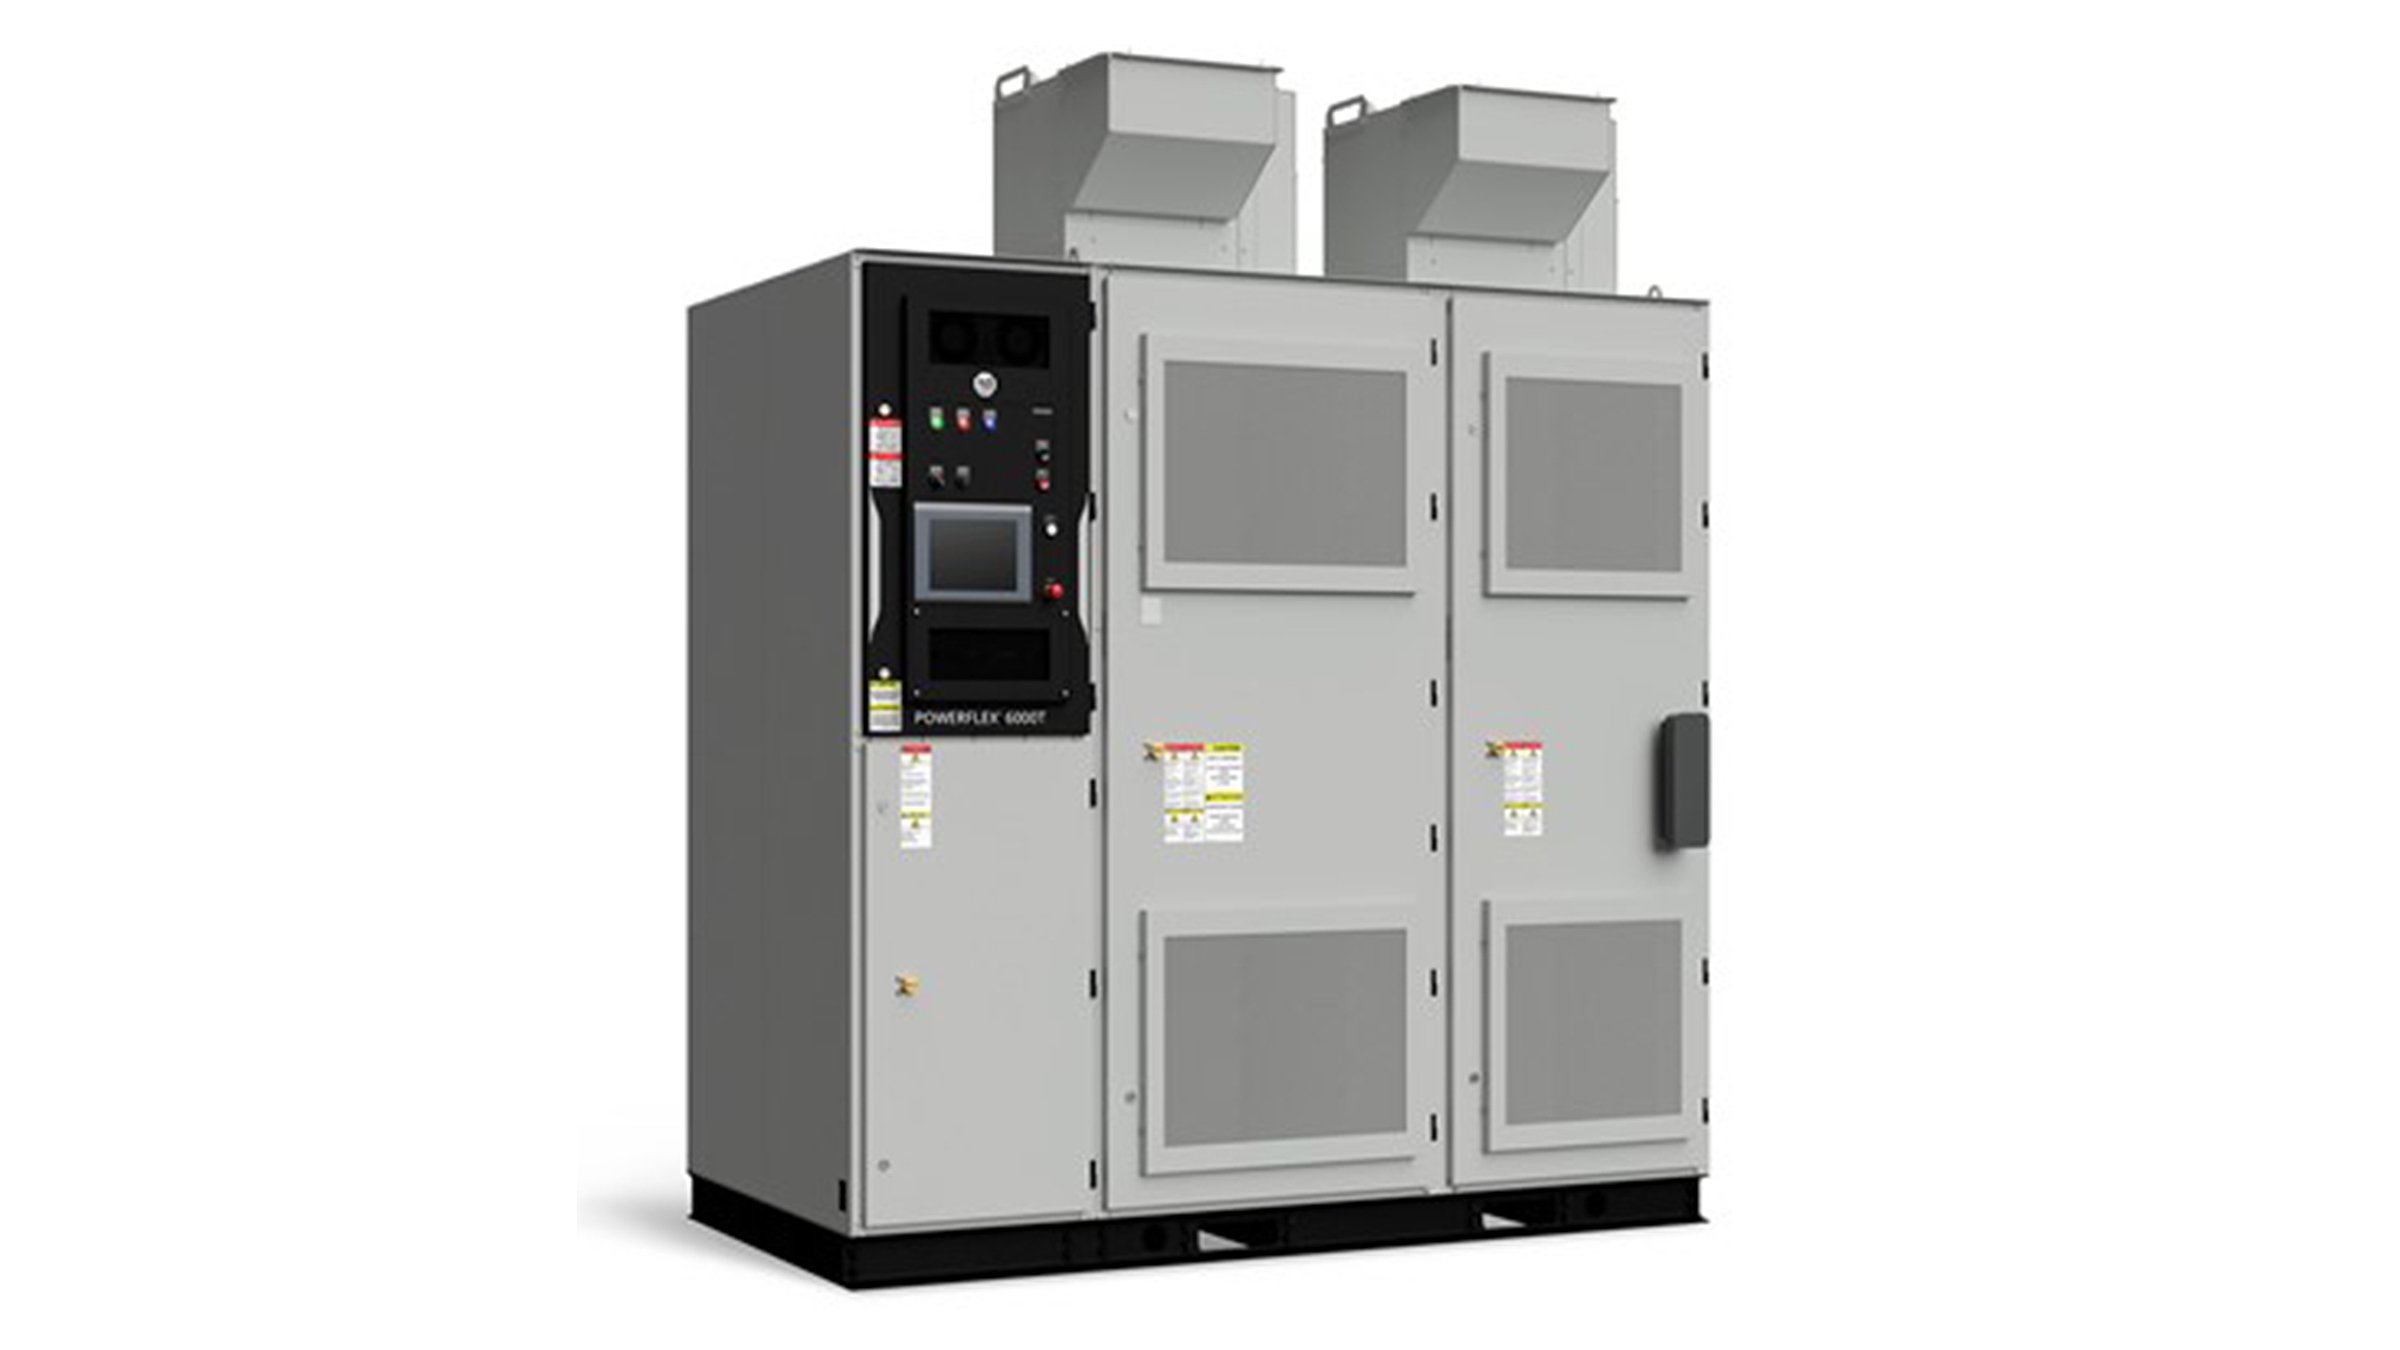 三个高大的灰色并排金属柜组成了 Rockwell Automation 的 PowerFlex 6000T 变频器单元，用于控制重工业应用中的电机。